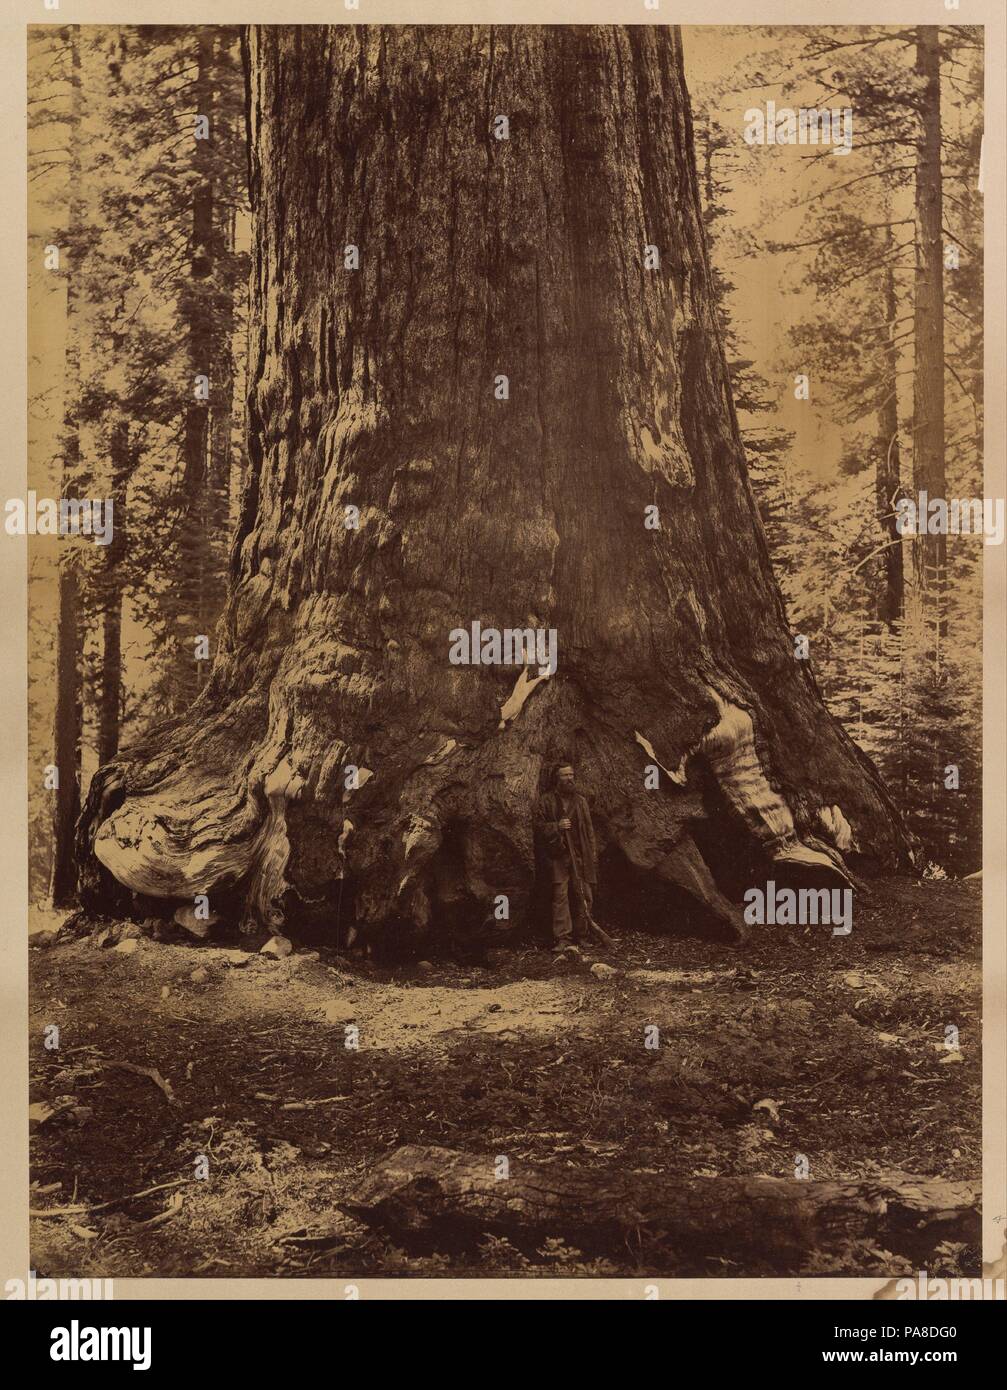 Sezione del Grizzly Giant con Galen Clark, Mariposa Grove, il Parco Nazionale di Yosemite. Artista: Carleton E. Watkins (American, 1829-1916). Dimensioni: Immagine: 20 5/8 × 15 11/16 in. (52,4 × 39,8 cm) foglio: 23 13/16 × 19 1/16 in. (60,5 × 48,4 cm). Data: 1865-66. Museo: Metropolitan Museum of Art di New York, Stati Uniti d'America. Foto Stock